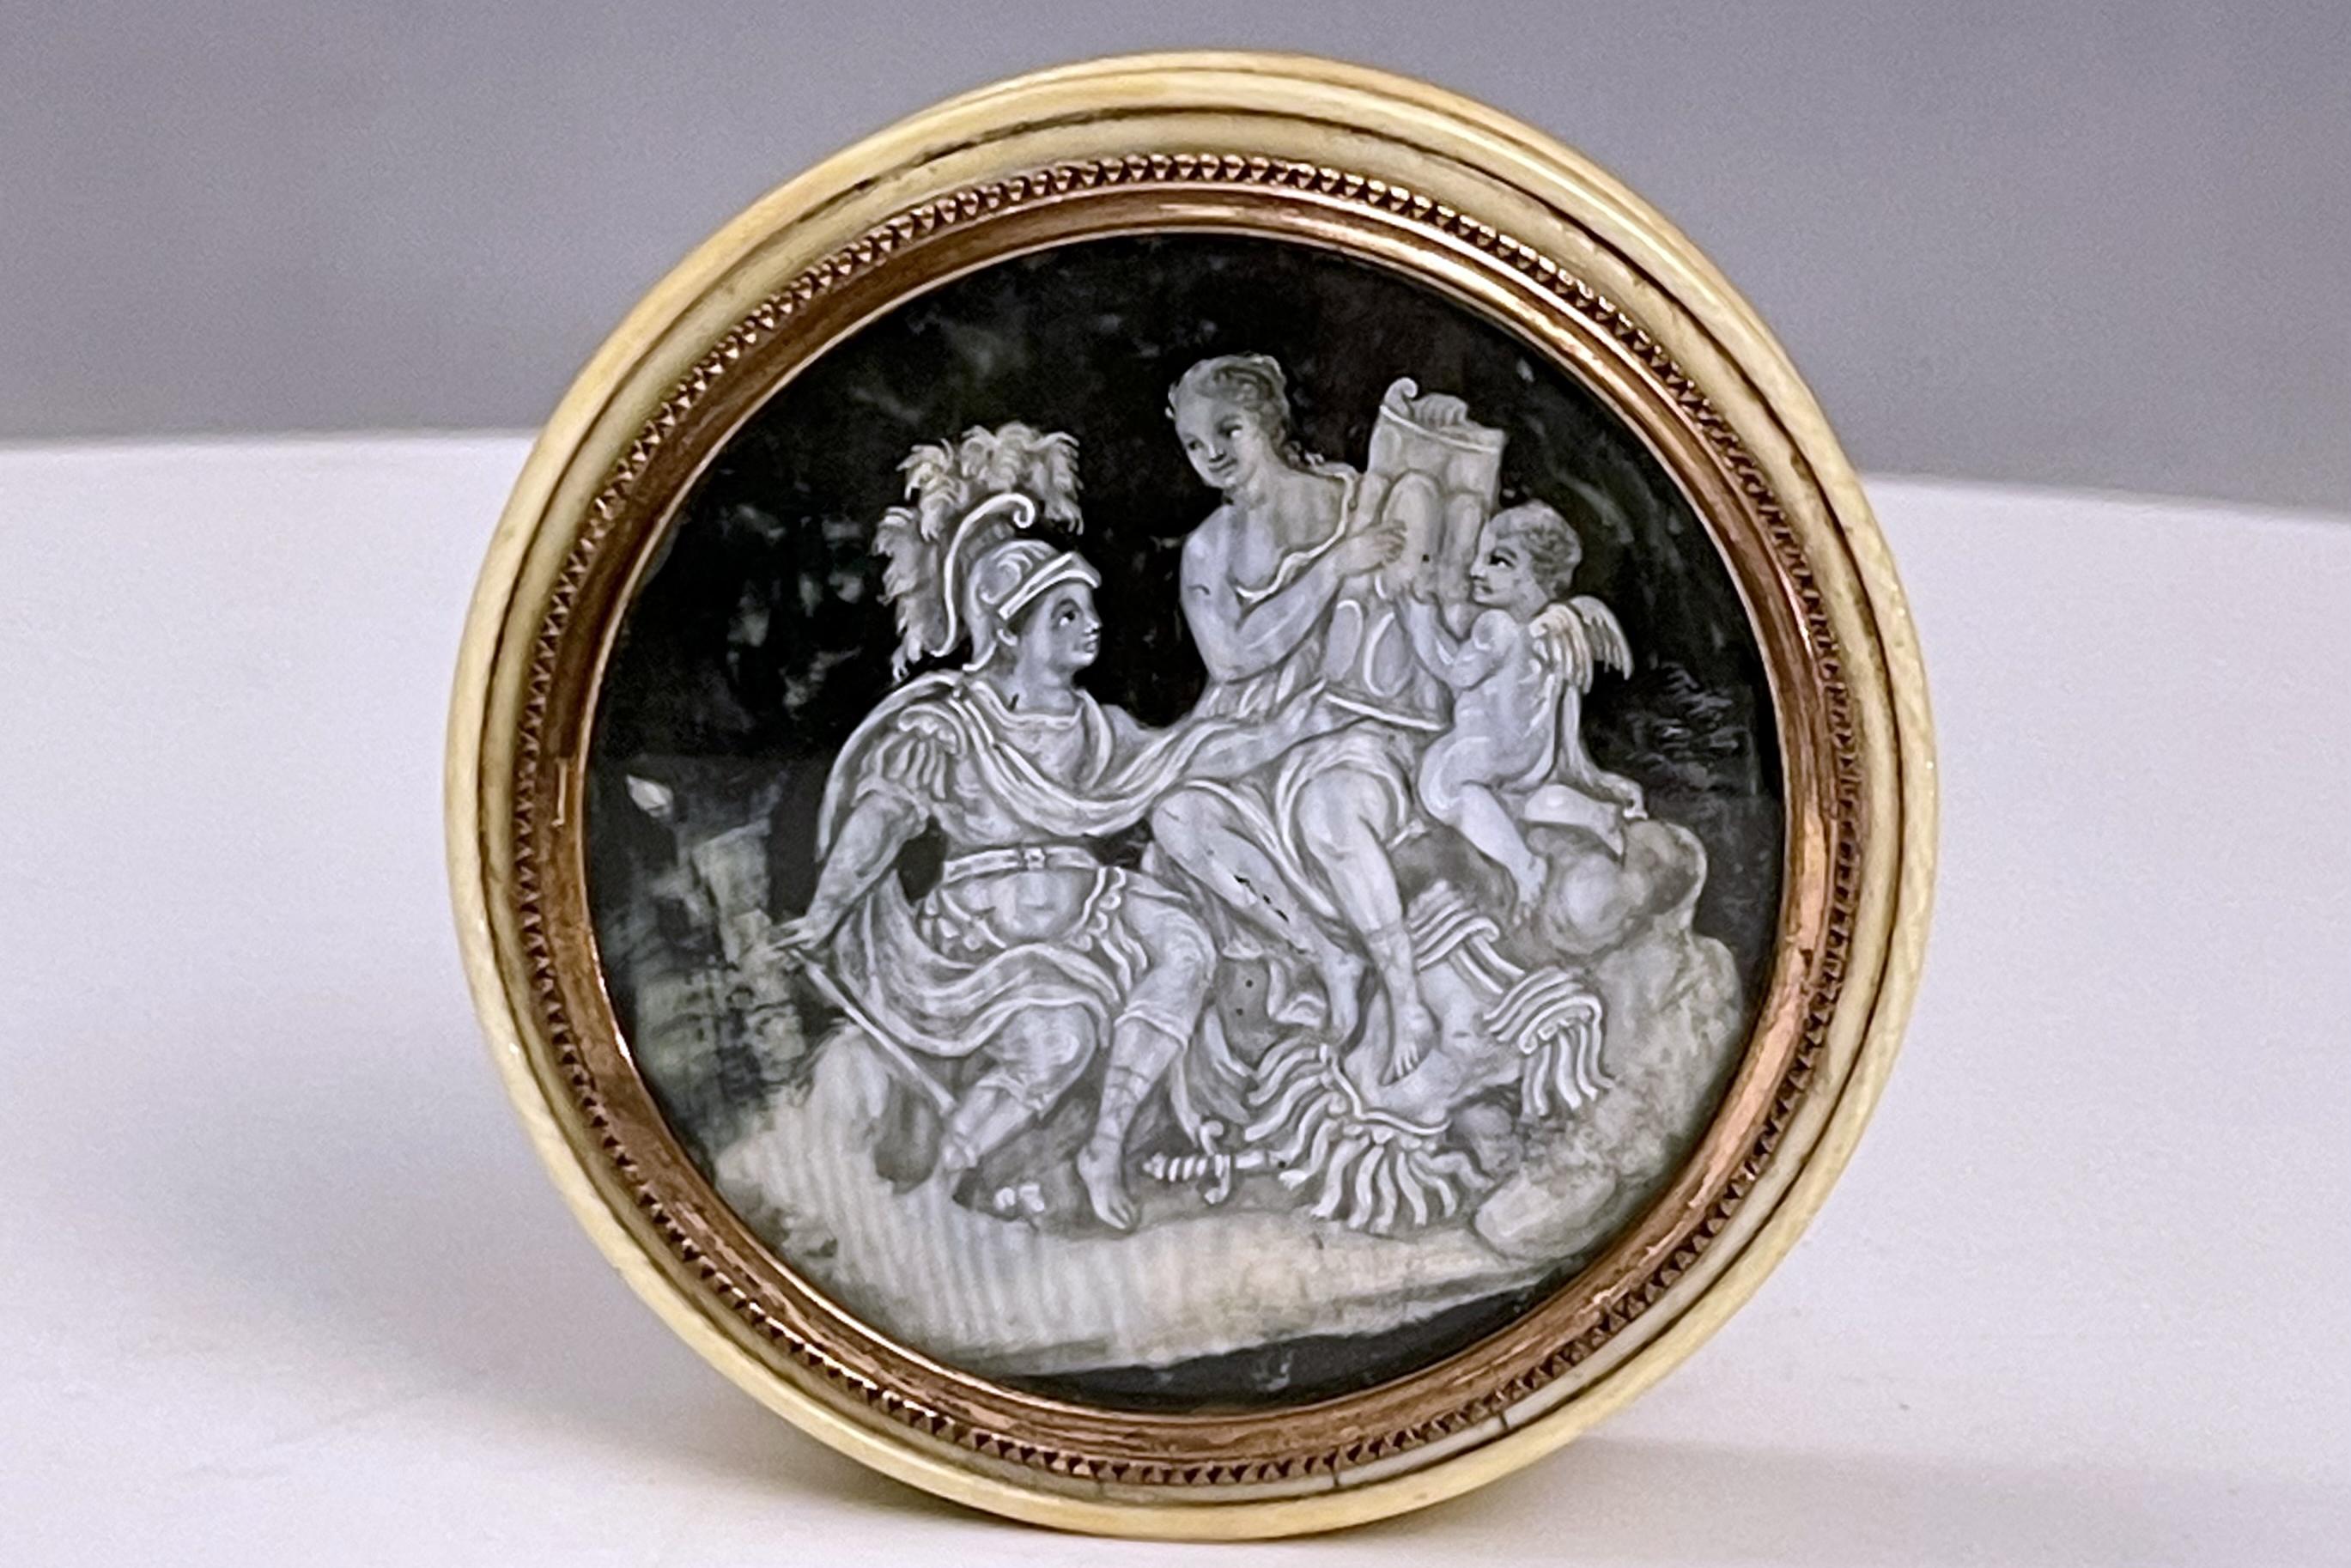 Schnupftabakdose aus Elfenbein und Schildpatt mit 18 K Goldrand. Eine Grisaille-Miniatur, die Mars, Venus und Amor darstellt. Frankreich zweite Hälfte des 18. Jahrhunderts. (VERSAND NUR IN DIE EU)